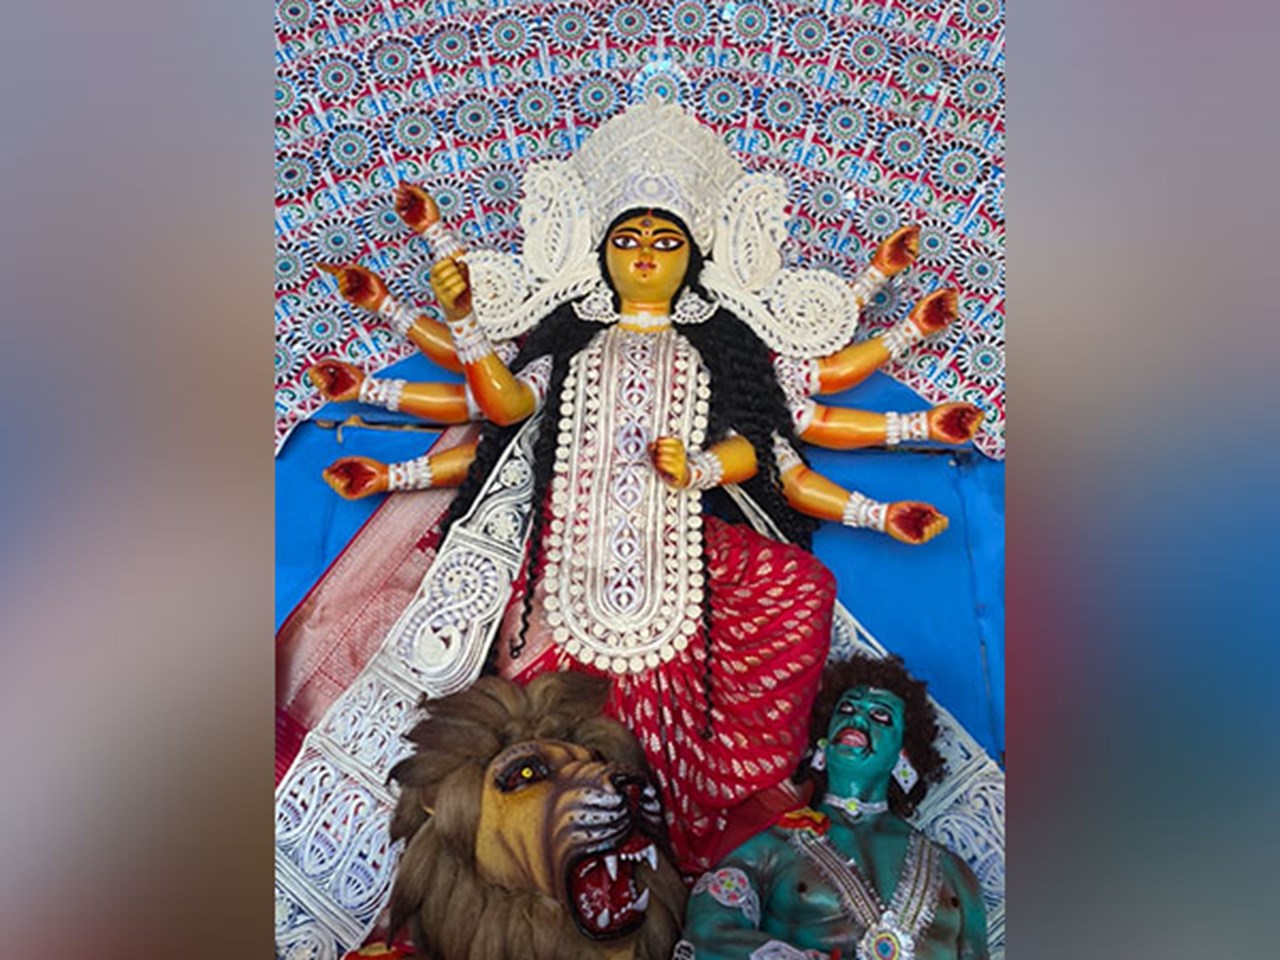 De Sunderbans sluiten zich aan bij de Durga Pujas in Kolkata, Nederland